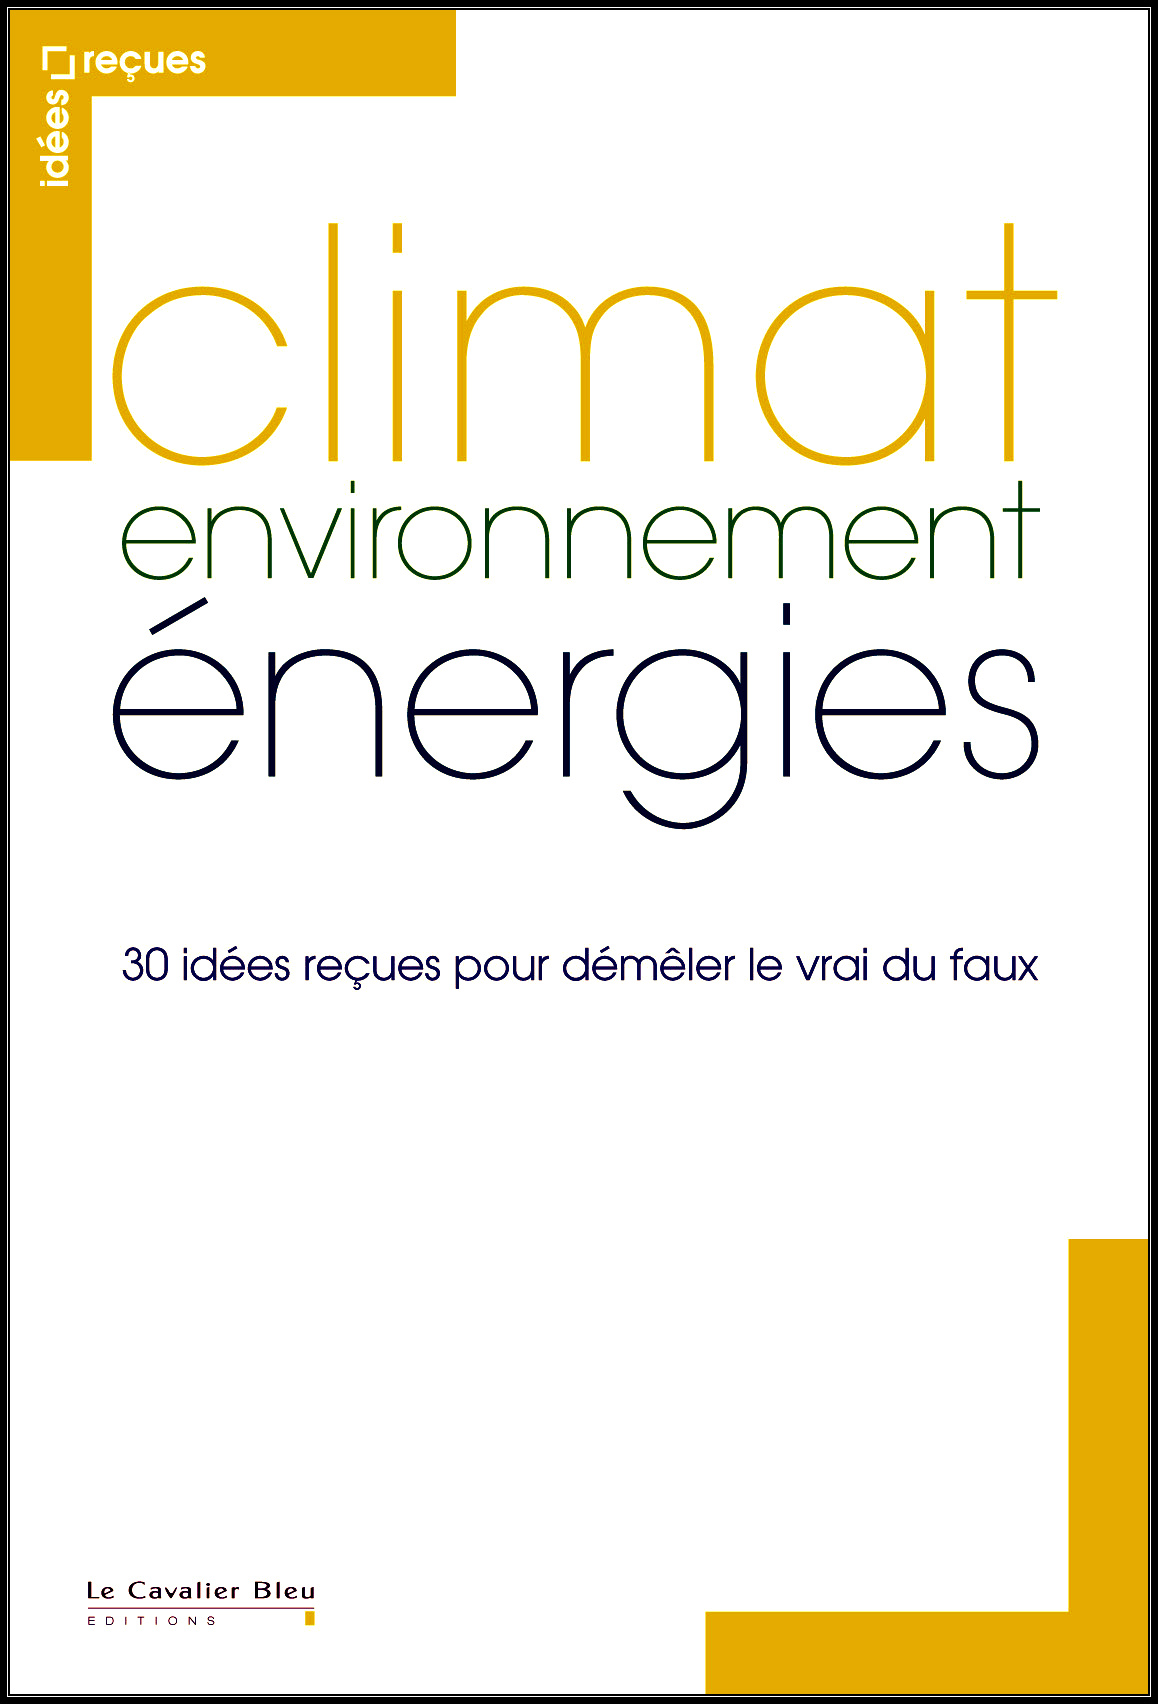 Collectif (2015): Climat, environnement, énergies. 30 idées reçues pour démêler le vrai du faux